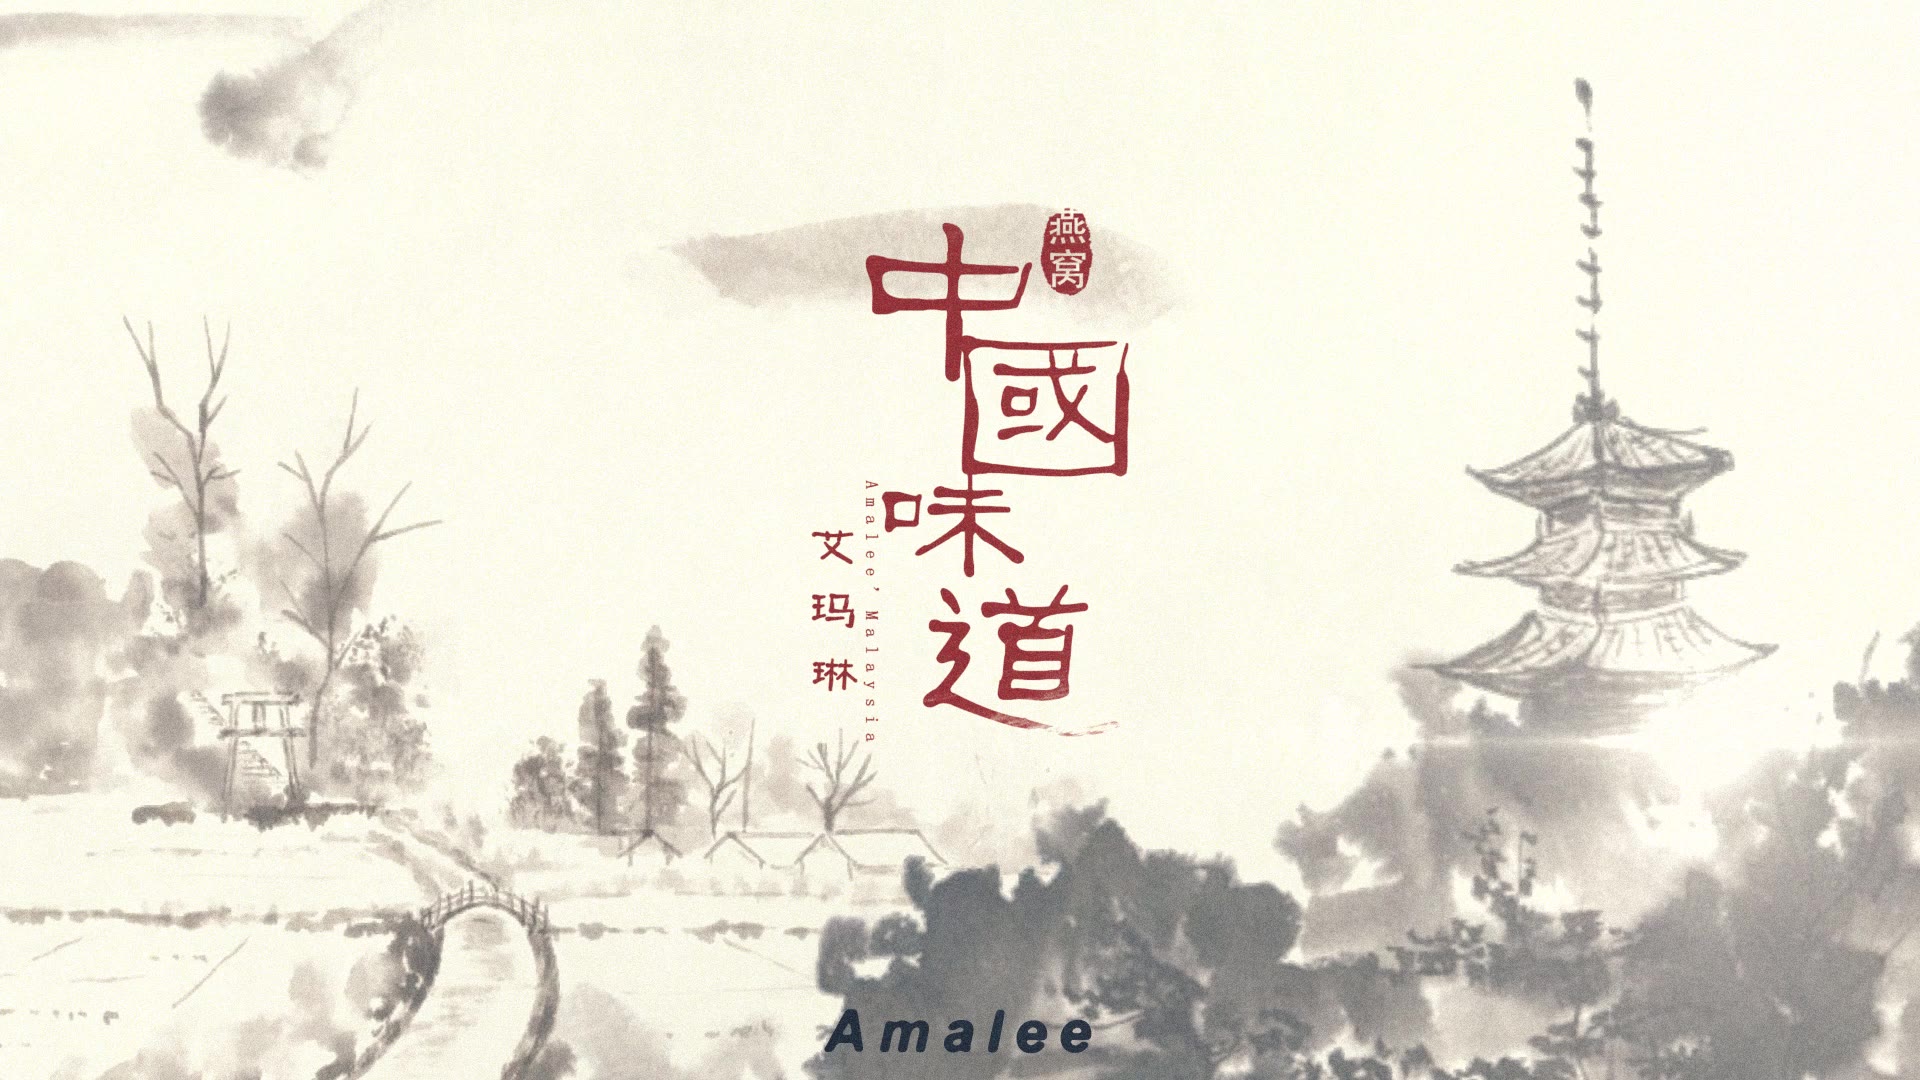 【中国广告】amalee燕窝阿胶糕——中国味道